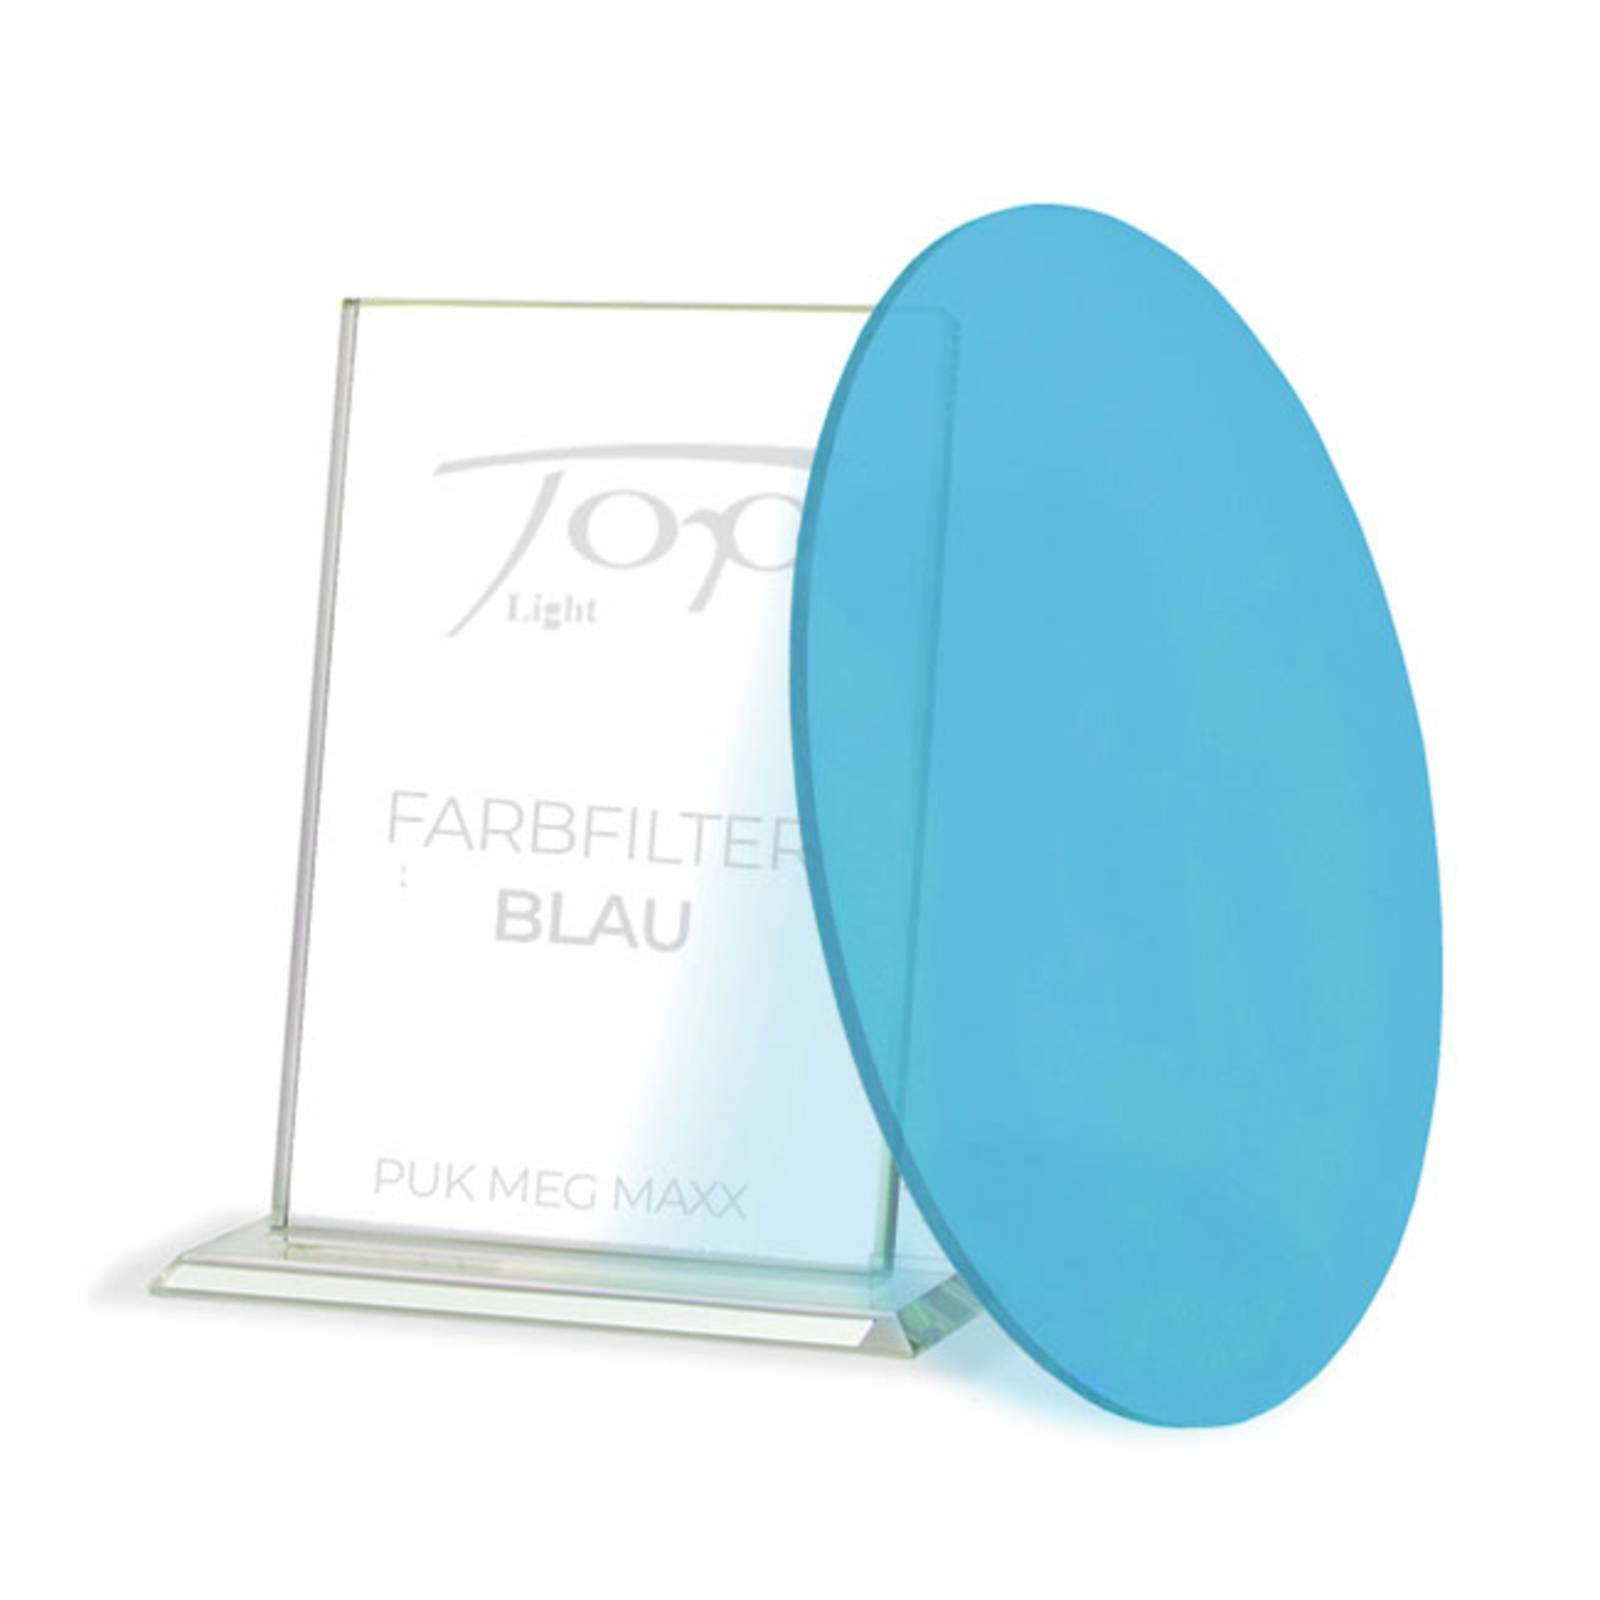 Image of Top Light Filtre de couleur pour la série de luminaires Puk Meg Maxx, bleu 4251349300405